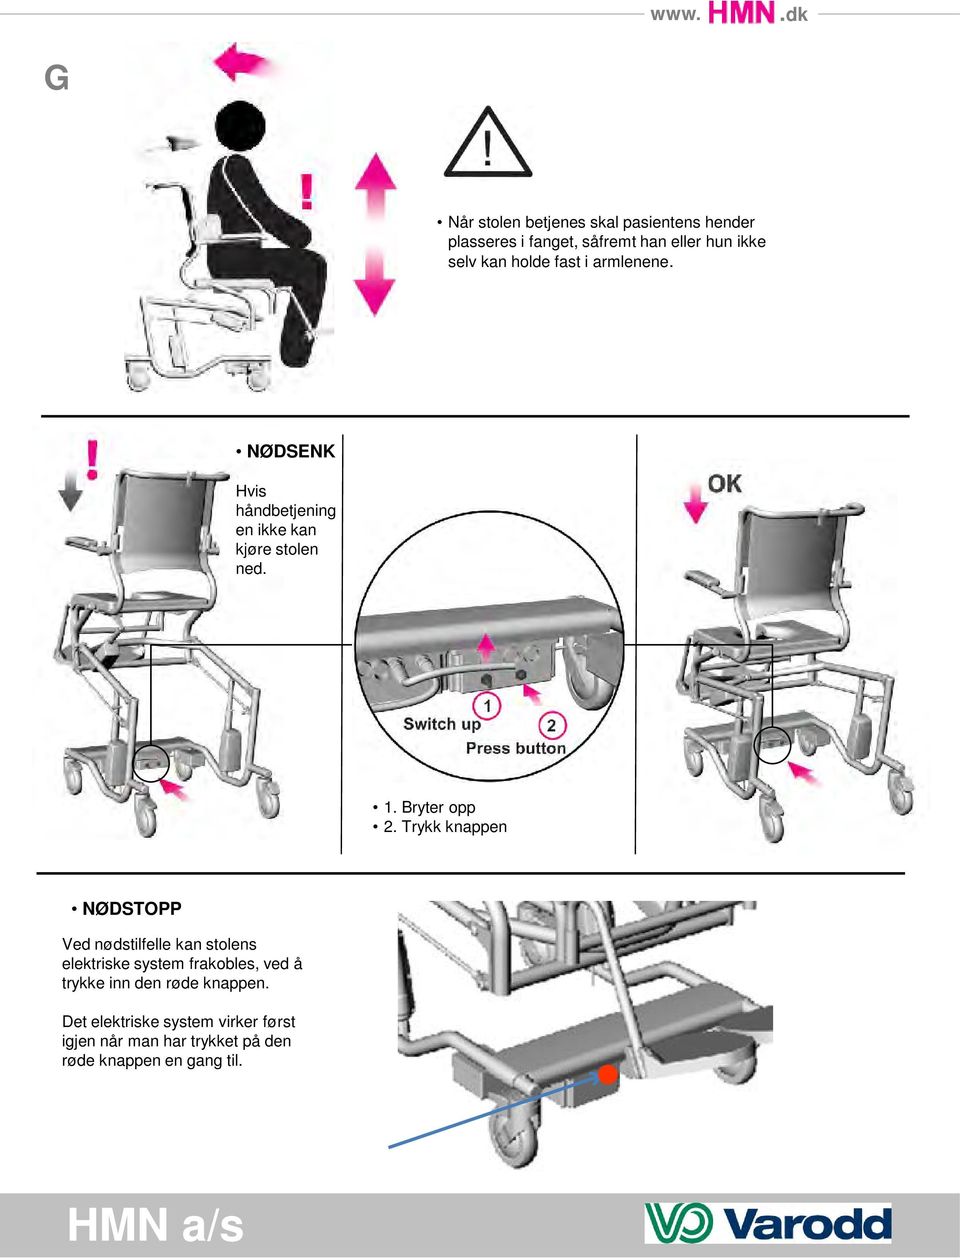 Trykk knappen NØDSTOPP Ved nødstilfelle kan stolens elektriske system frakobles, ved å trykke inn den